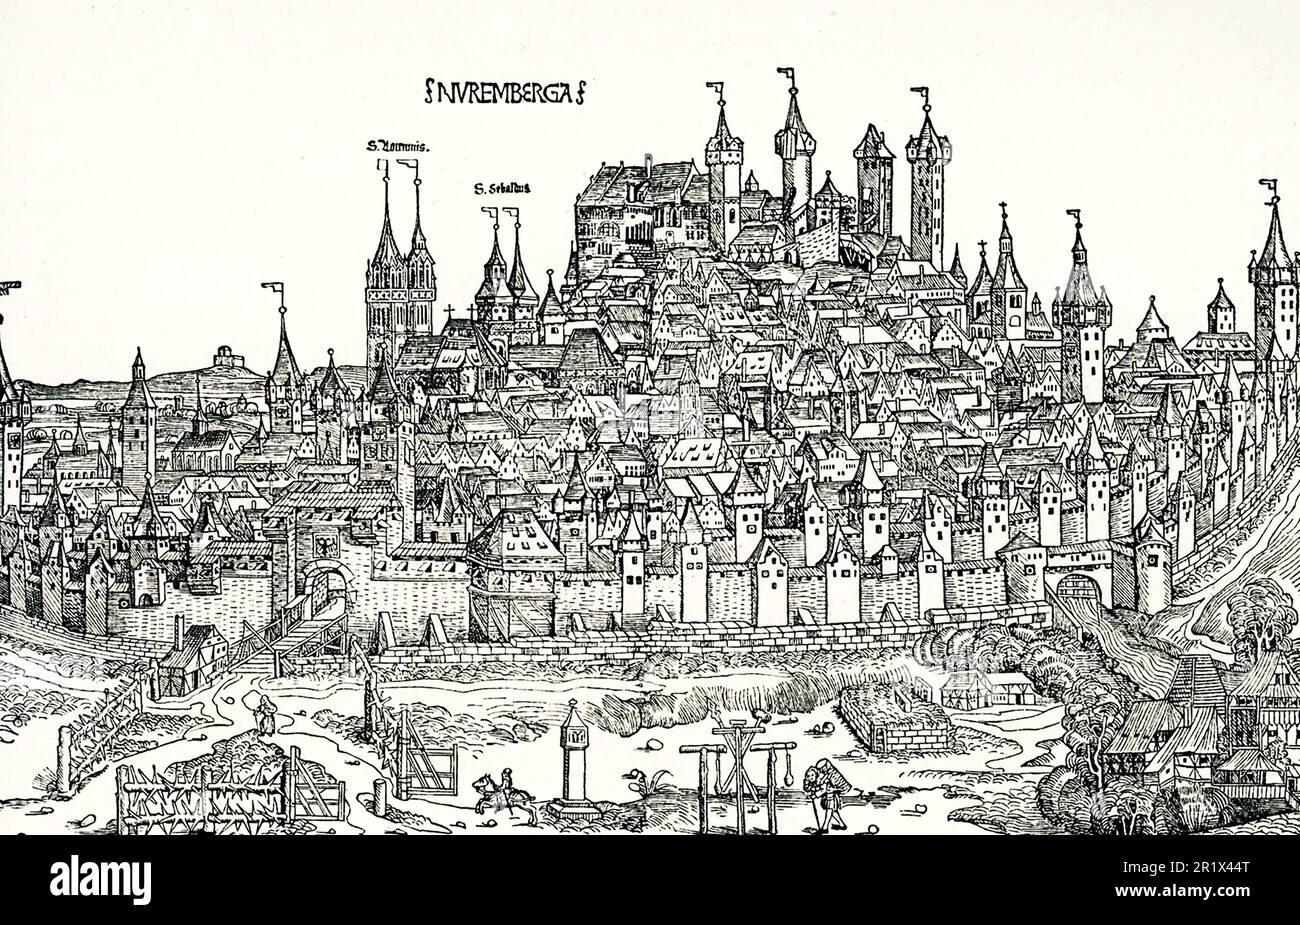 Der Titel von 1906 lautet: "Blick auf die Stadt Nürnberg im 15. Jahrhundert. Aus Hartmann Schedels Chronik der Welt." Hartmann Schedel (1440-1514) war ein deutscher Historiker, Arzt, Humanist und einer der ersten Kartografen, der die Druckerpresse nutzte. Er schrieb den Chronicle 1493. Stockfoto